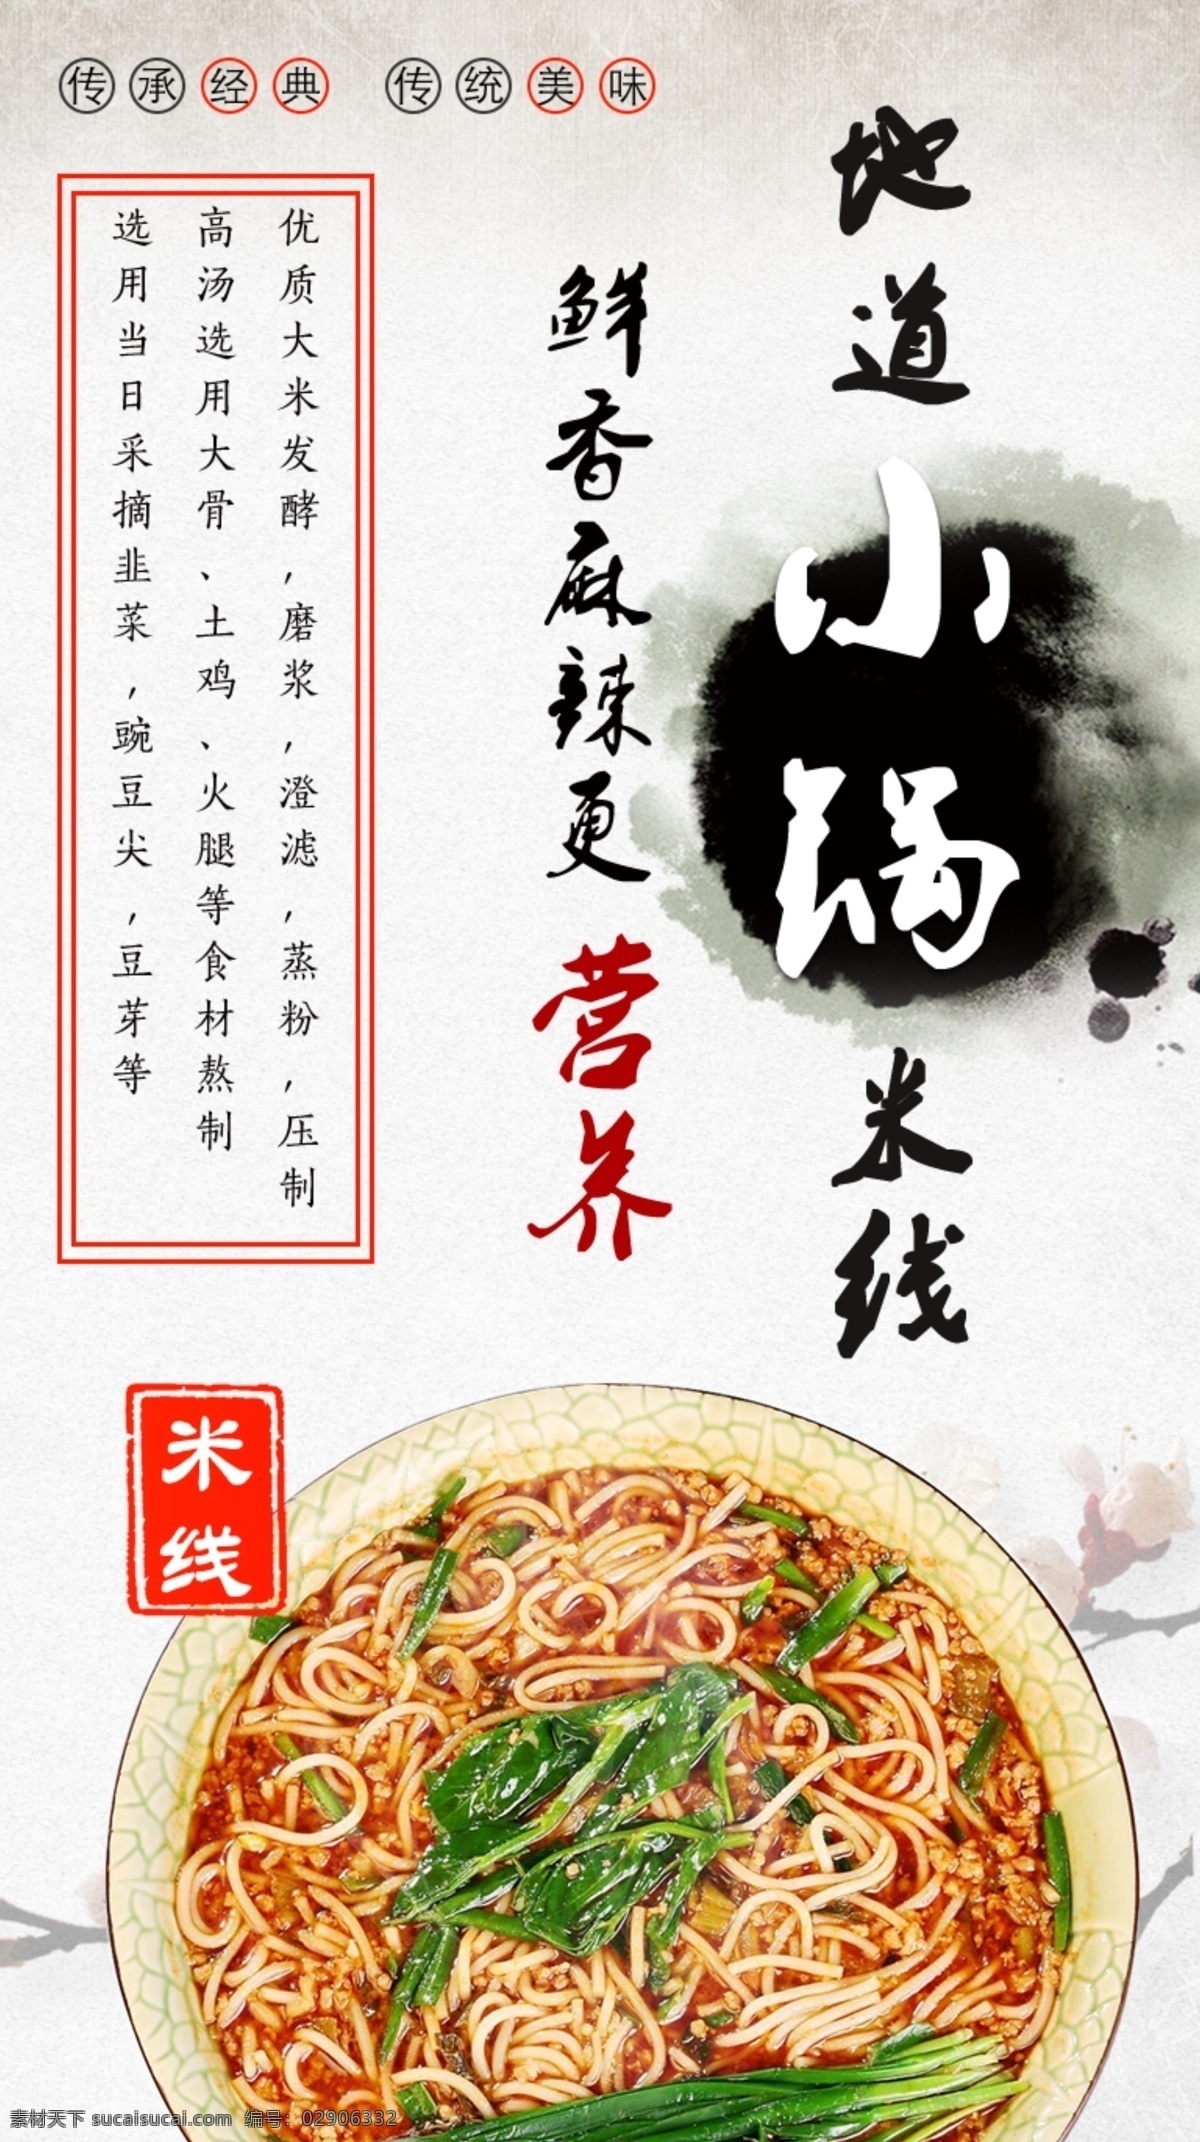 小锅米线海报 小锅 米线 海报 美食 小吃 营养 展板 过桥米线